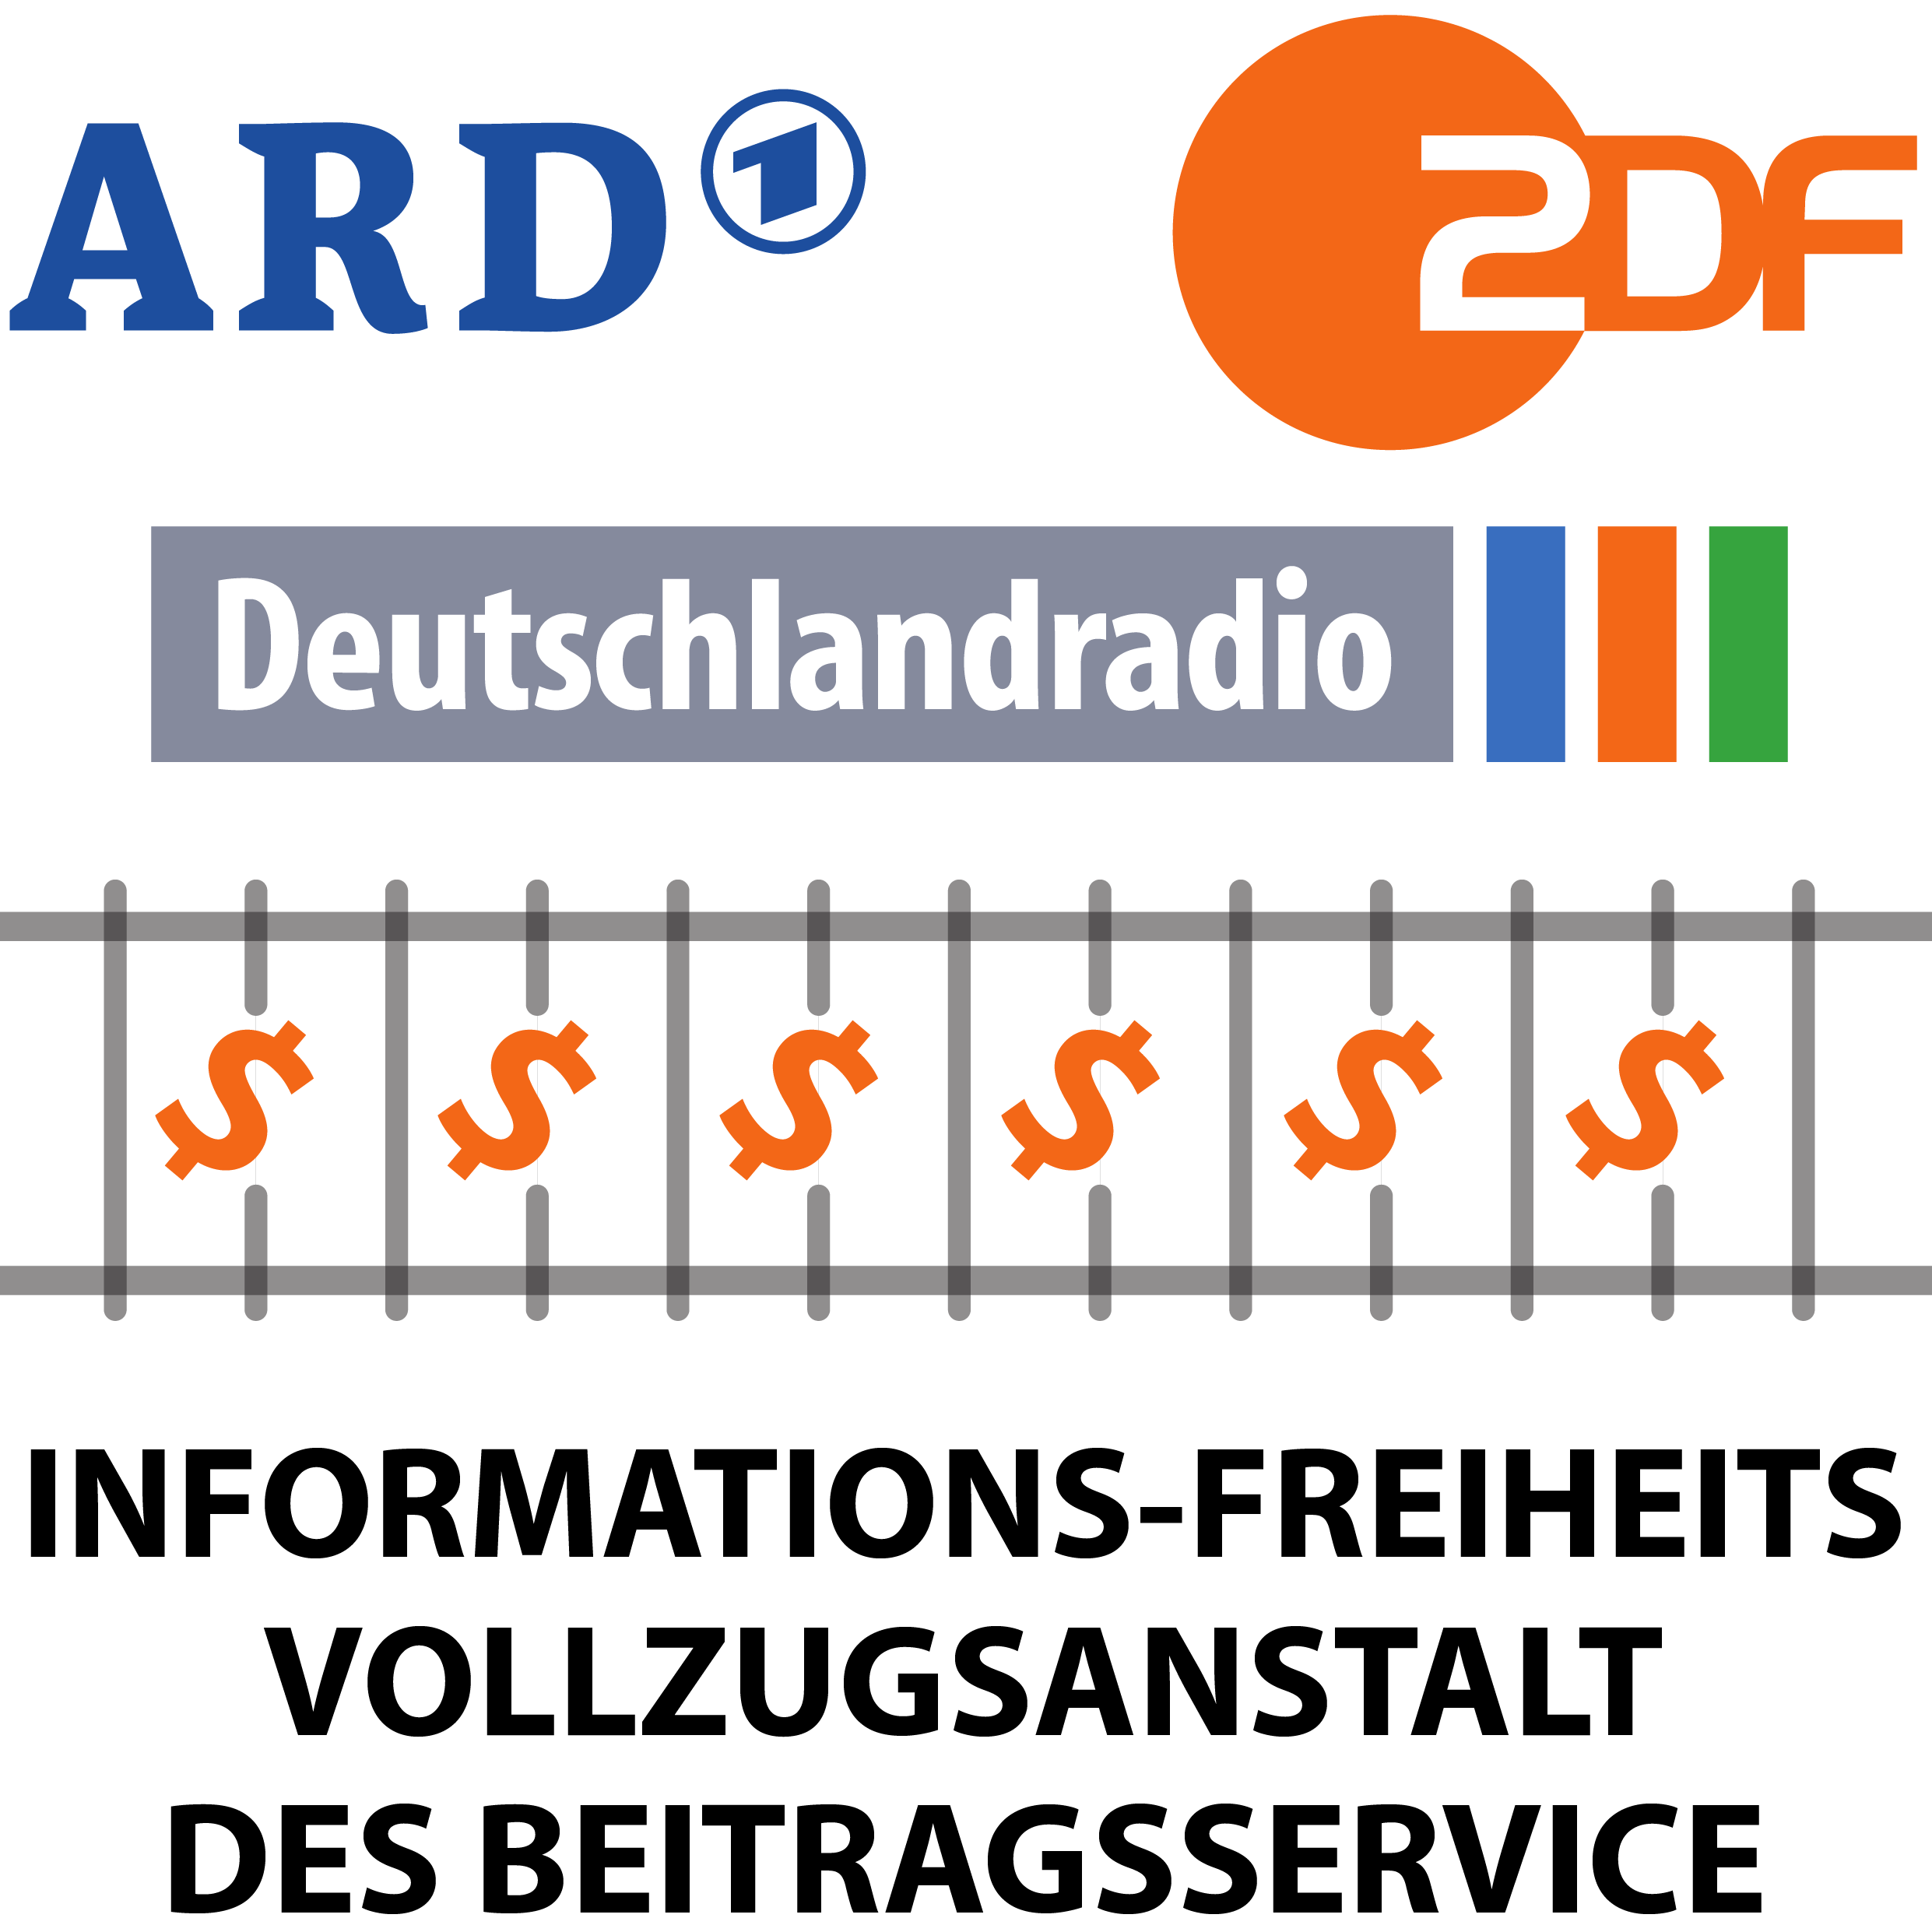 ARD_ZDF_Deutschlandradio_Beitragsservice_Logo_Informations-freiheits-Vollzugsanstalt_GEZ_Knast-01